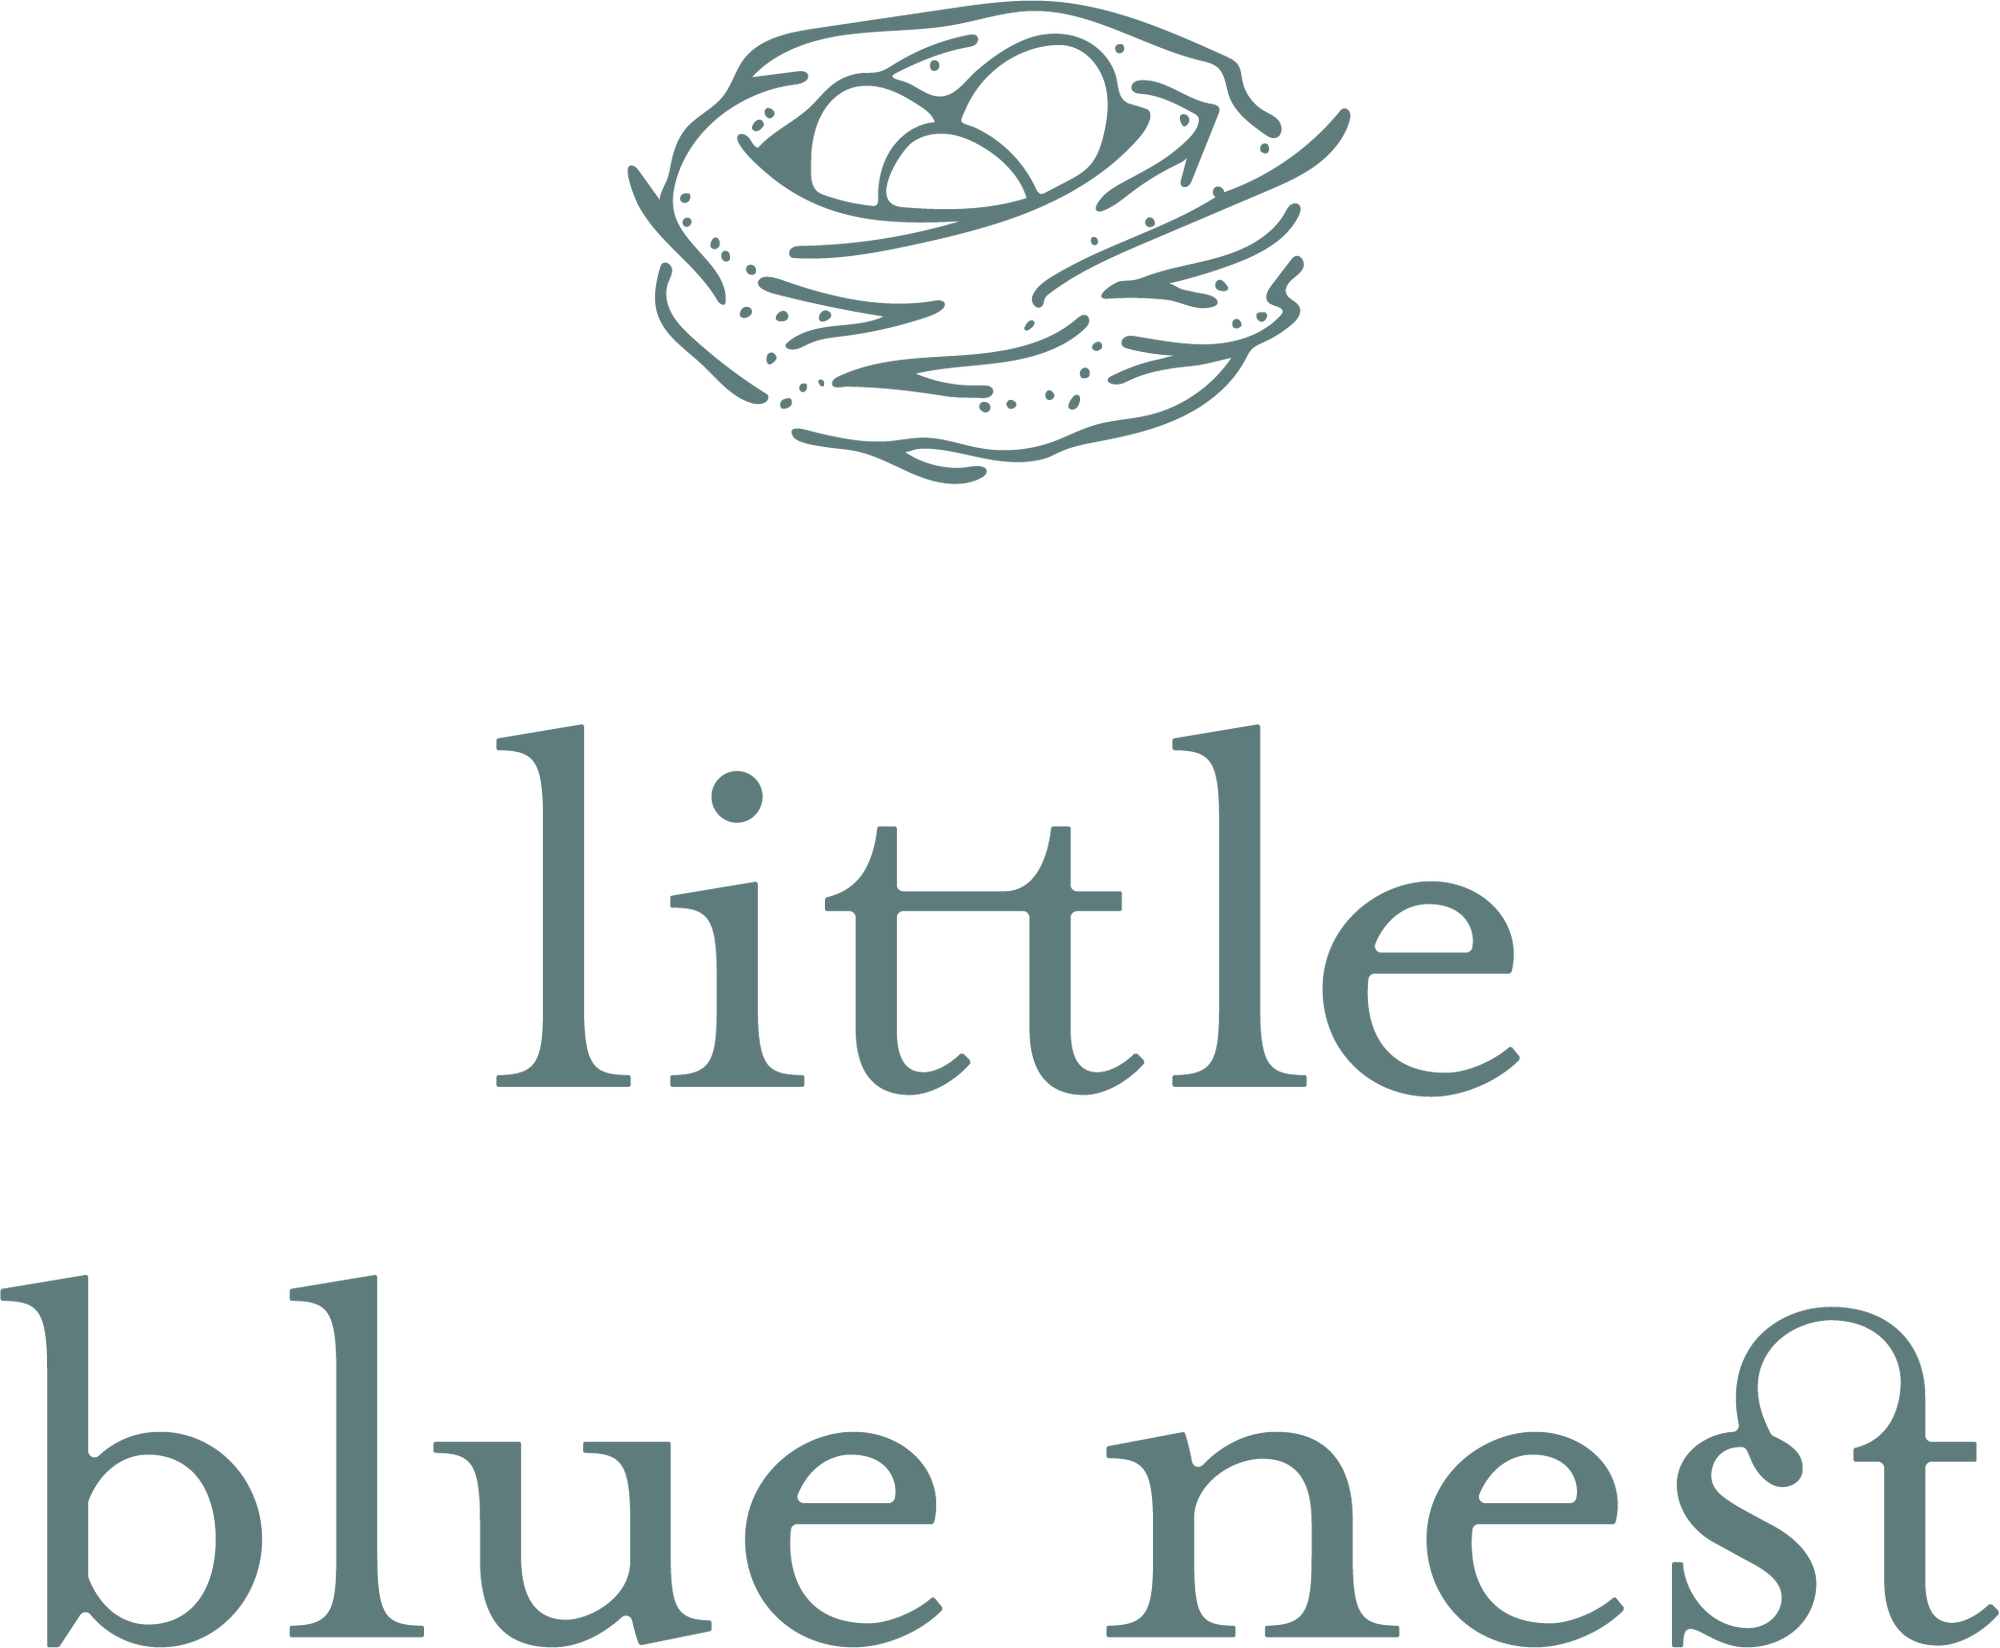 Little Blue Nest